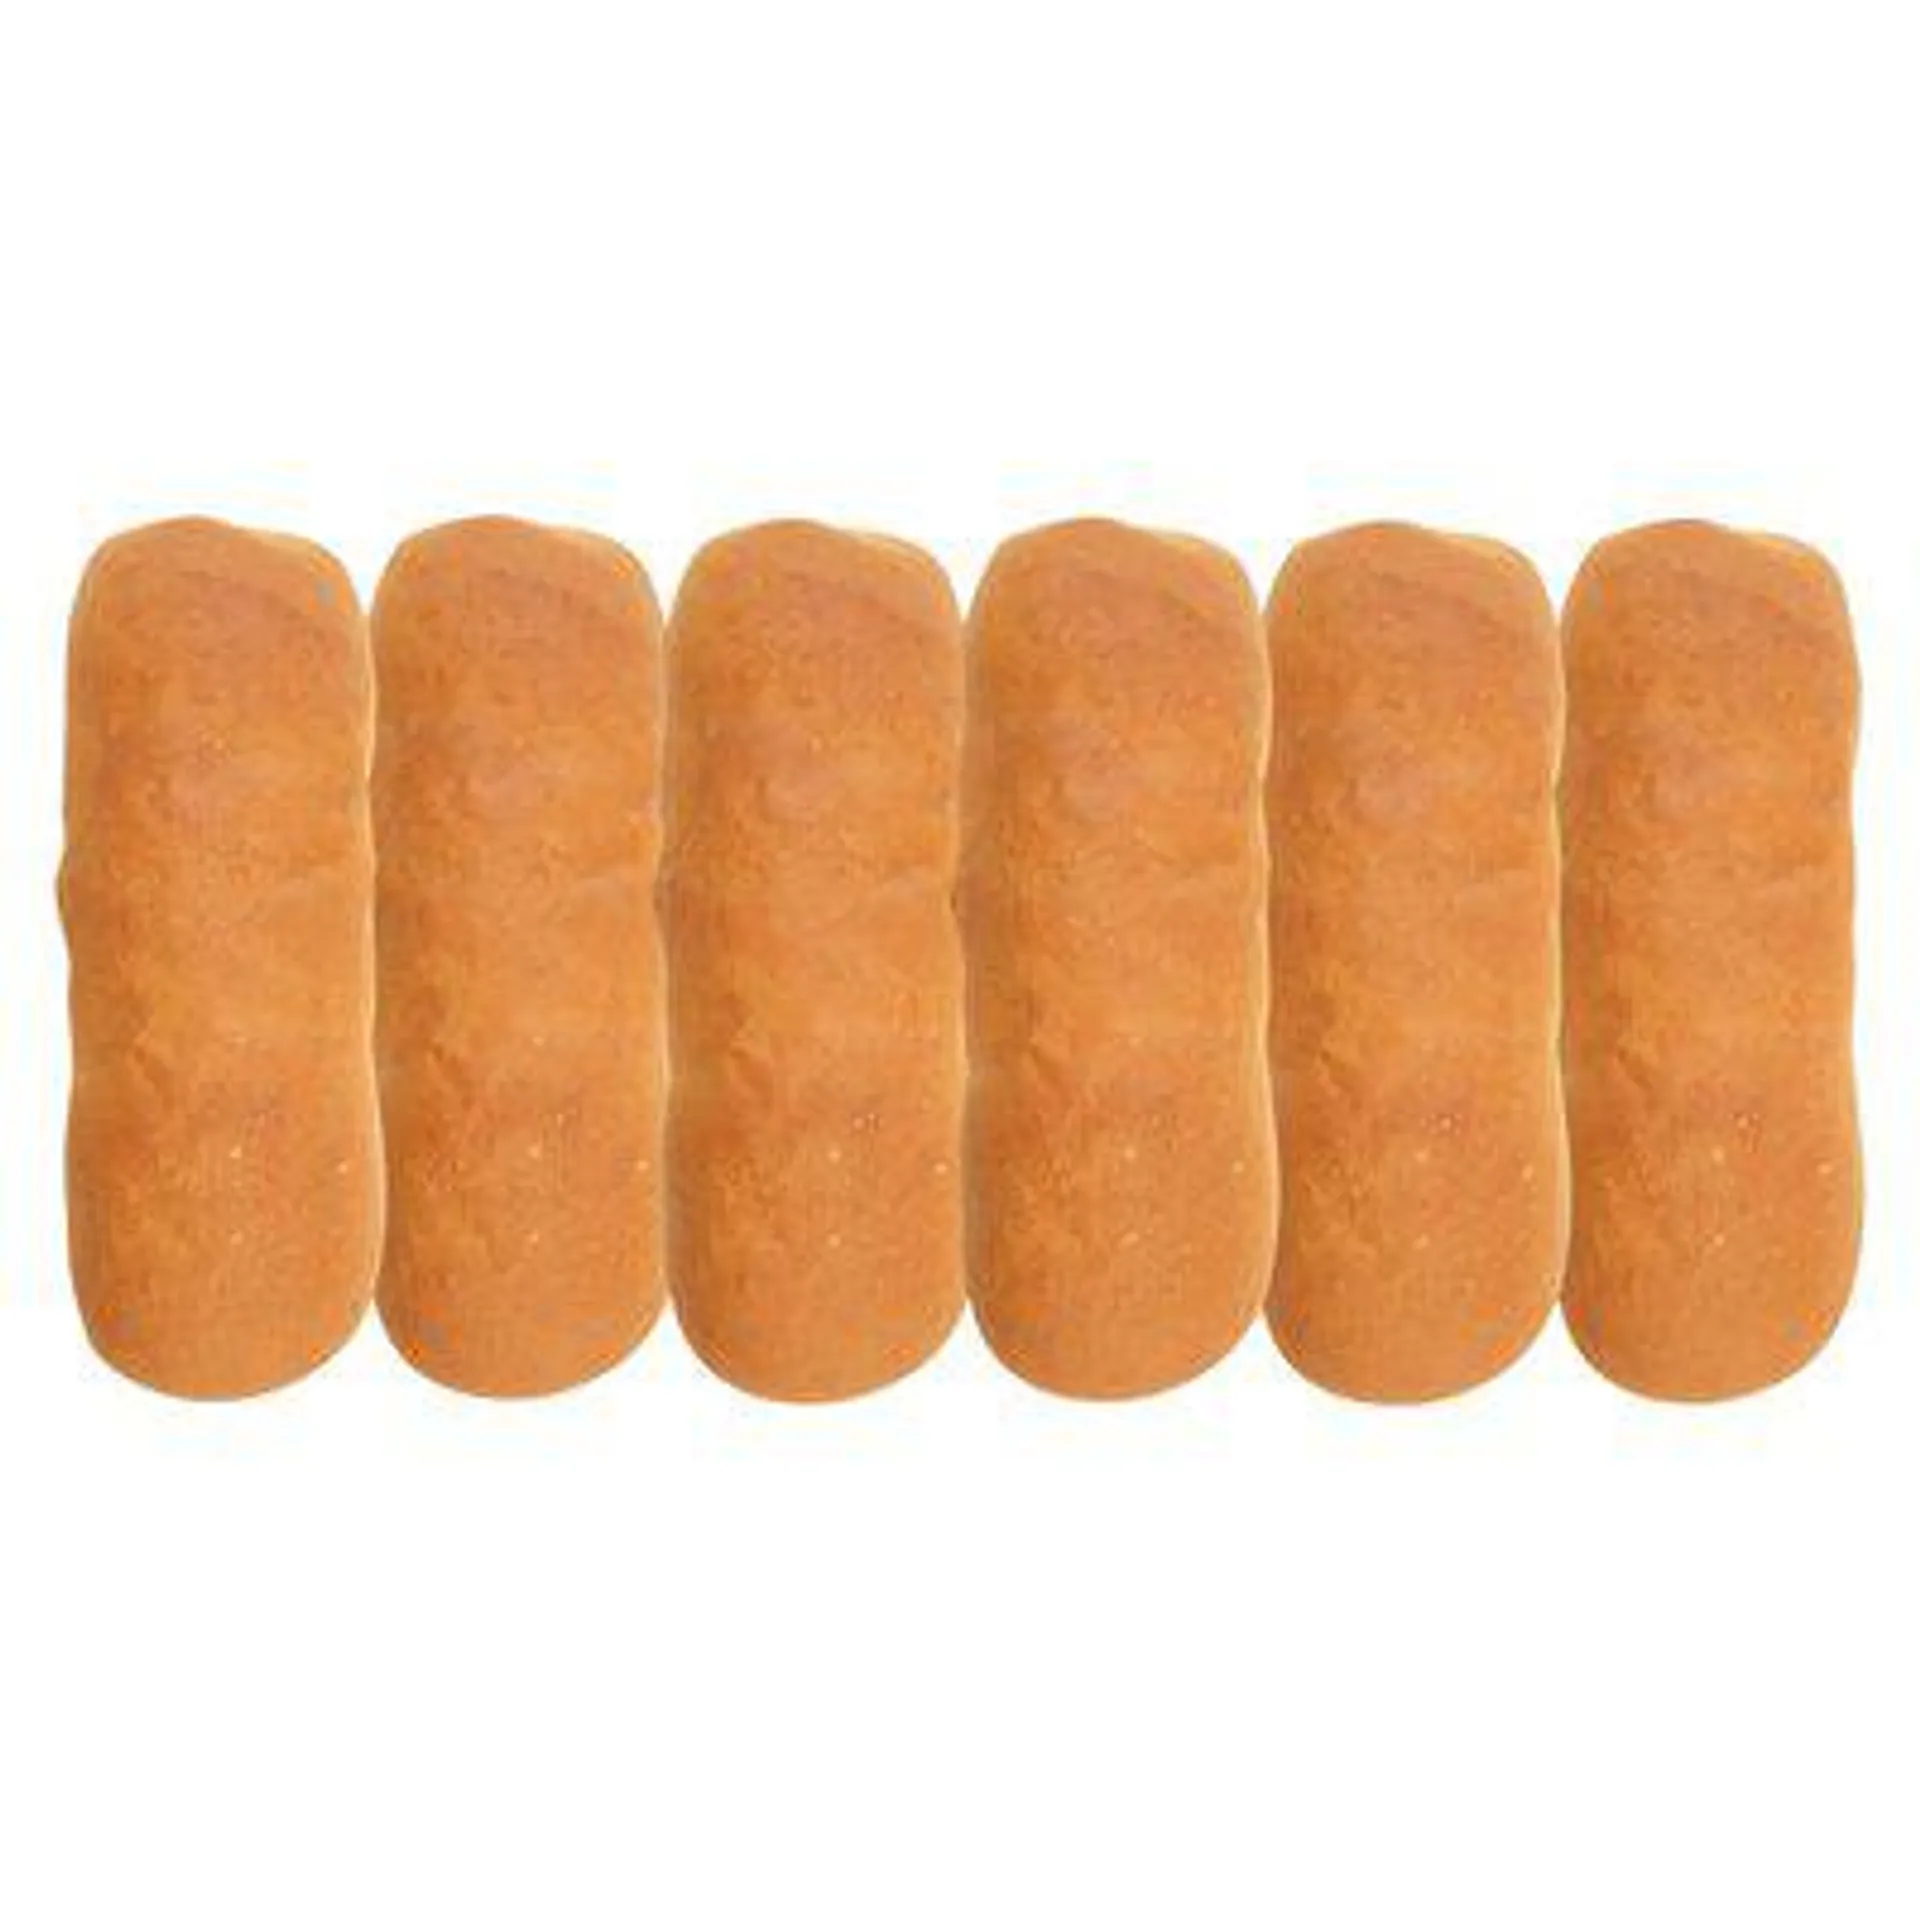 PnP Hotdog Rolls 6 Pack